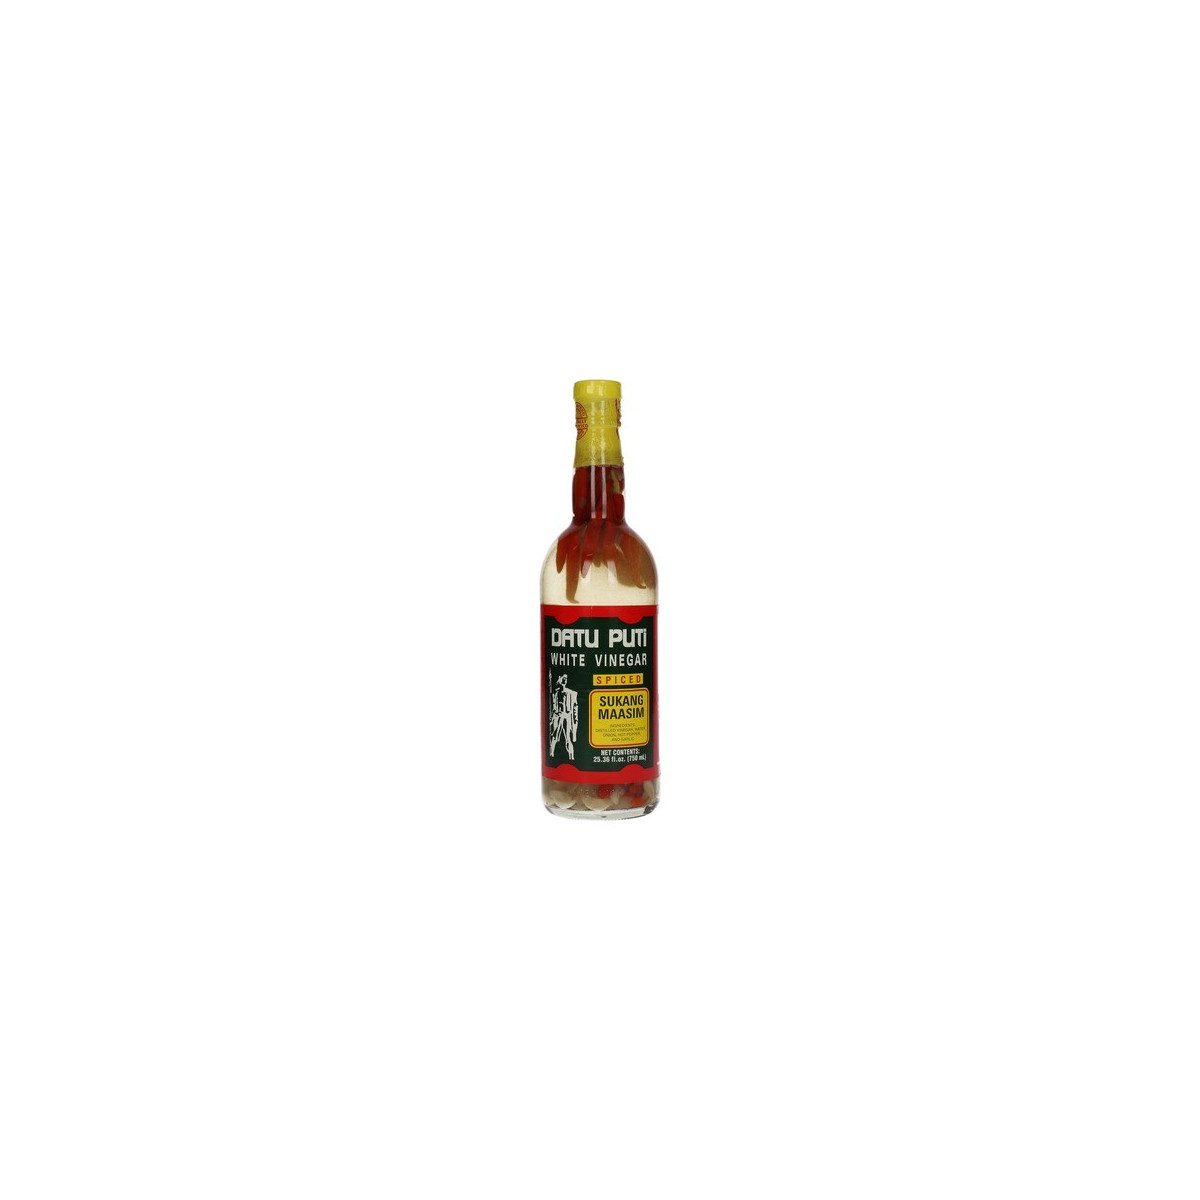 Spiced White Vinegar (Sinamak) 750ml - Datu Puti